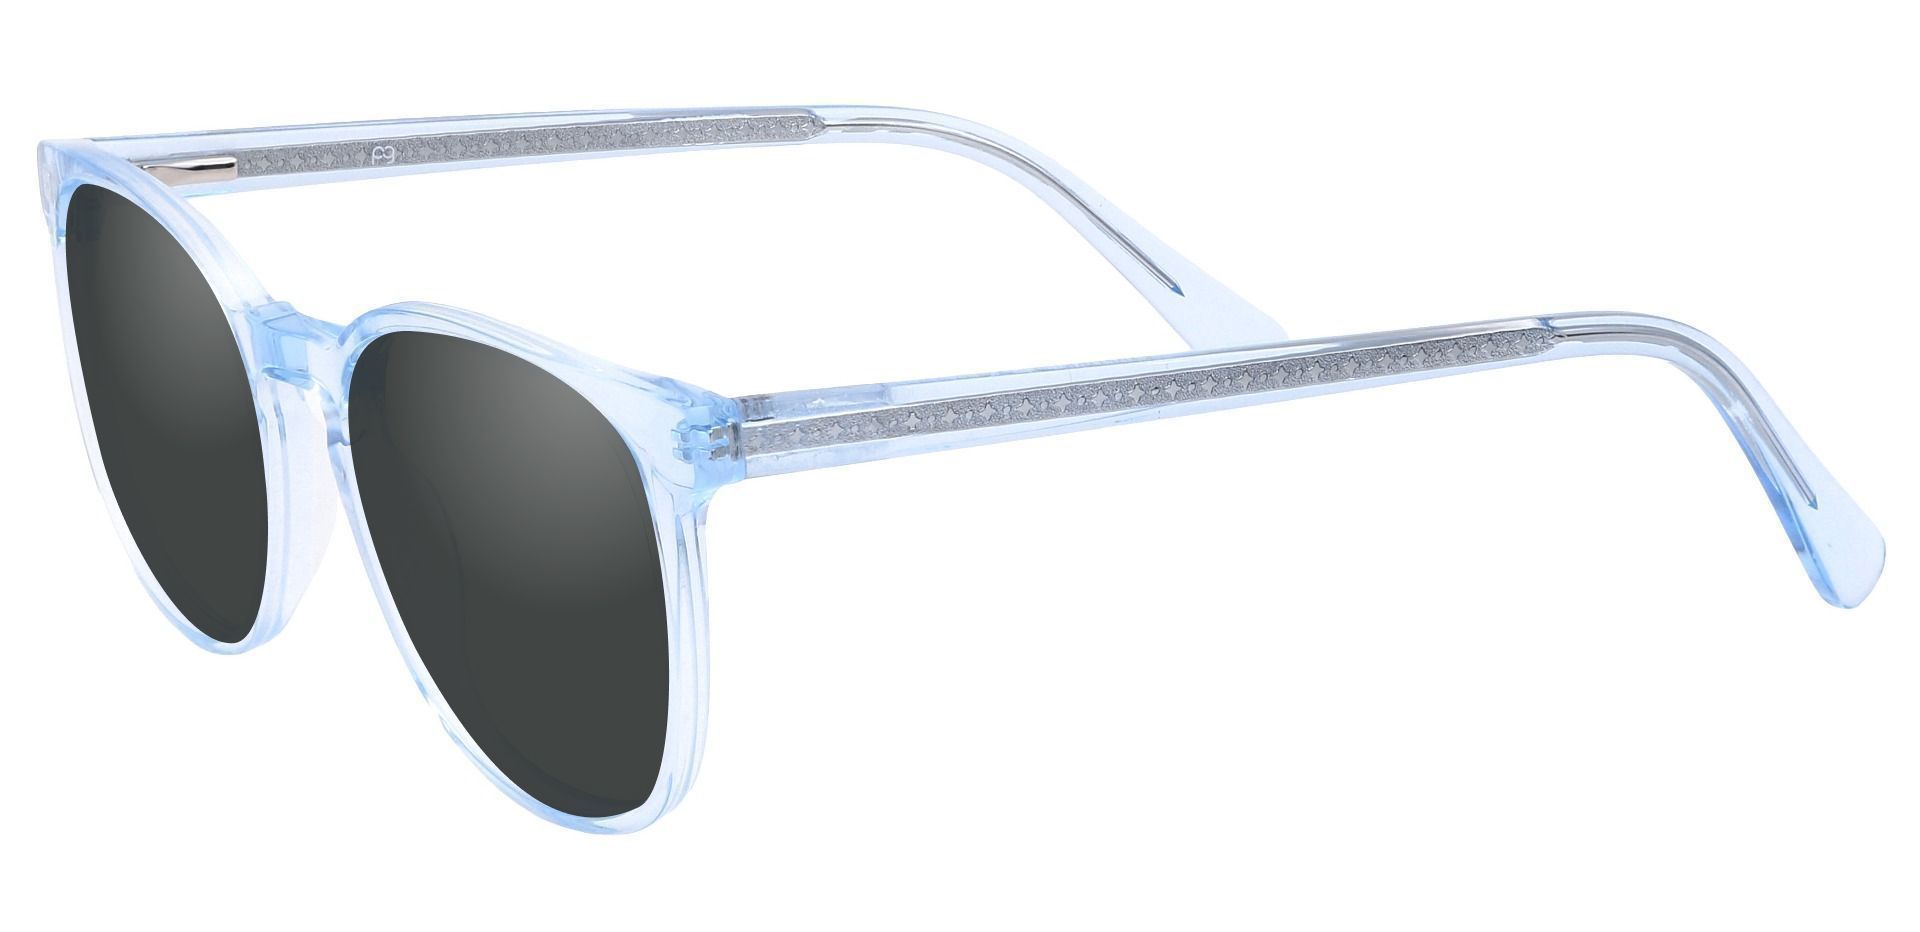 Nebula Round Prescription Sunglasses - Blue Frame With Gray Lenses